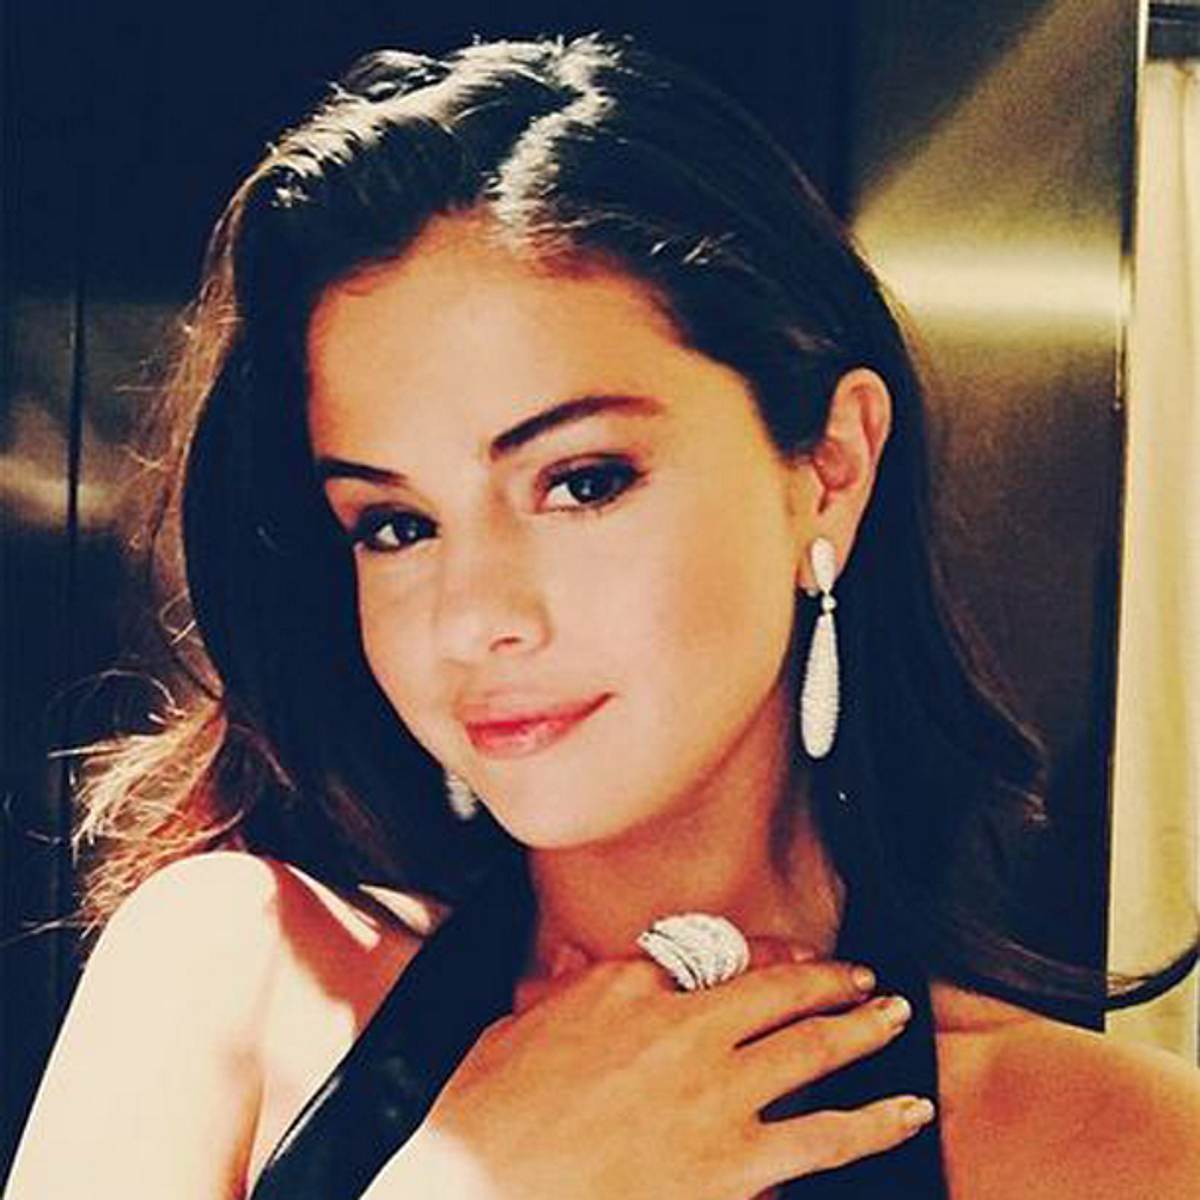 Selena Gomez mag es, Zuhause nackt zu sein